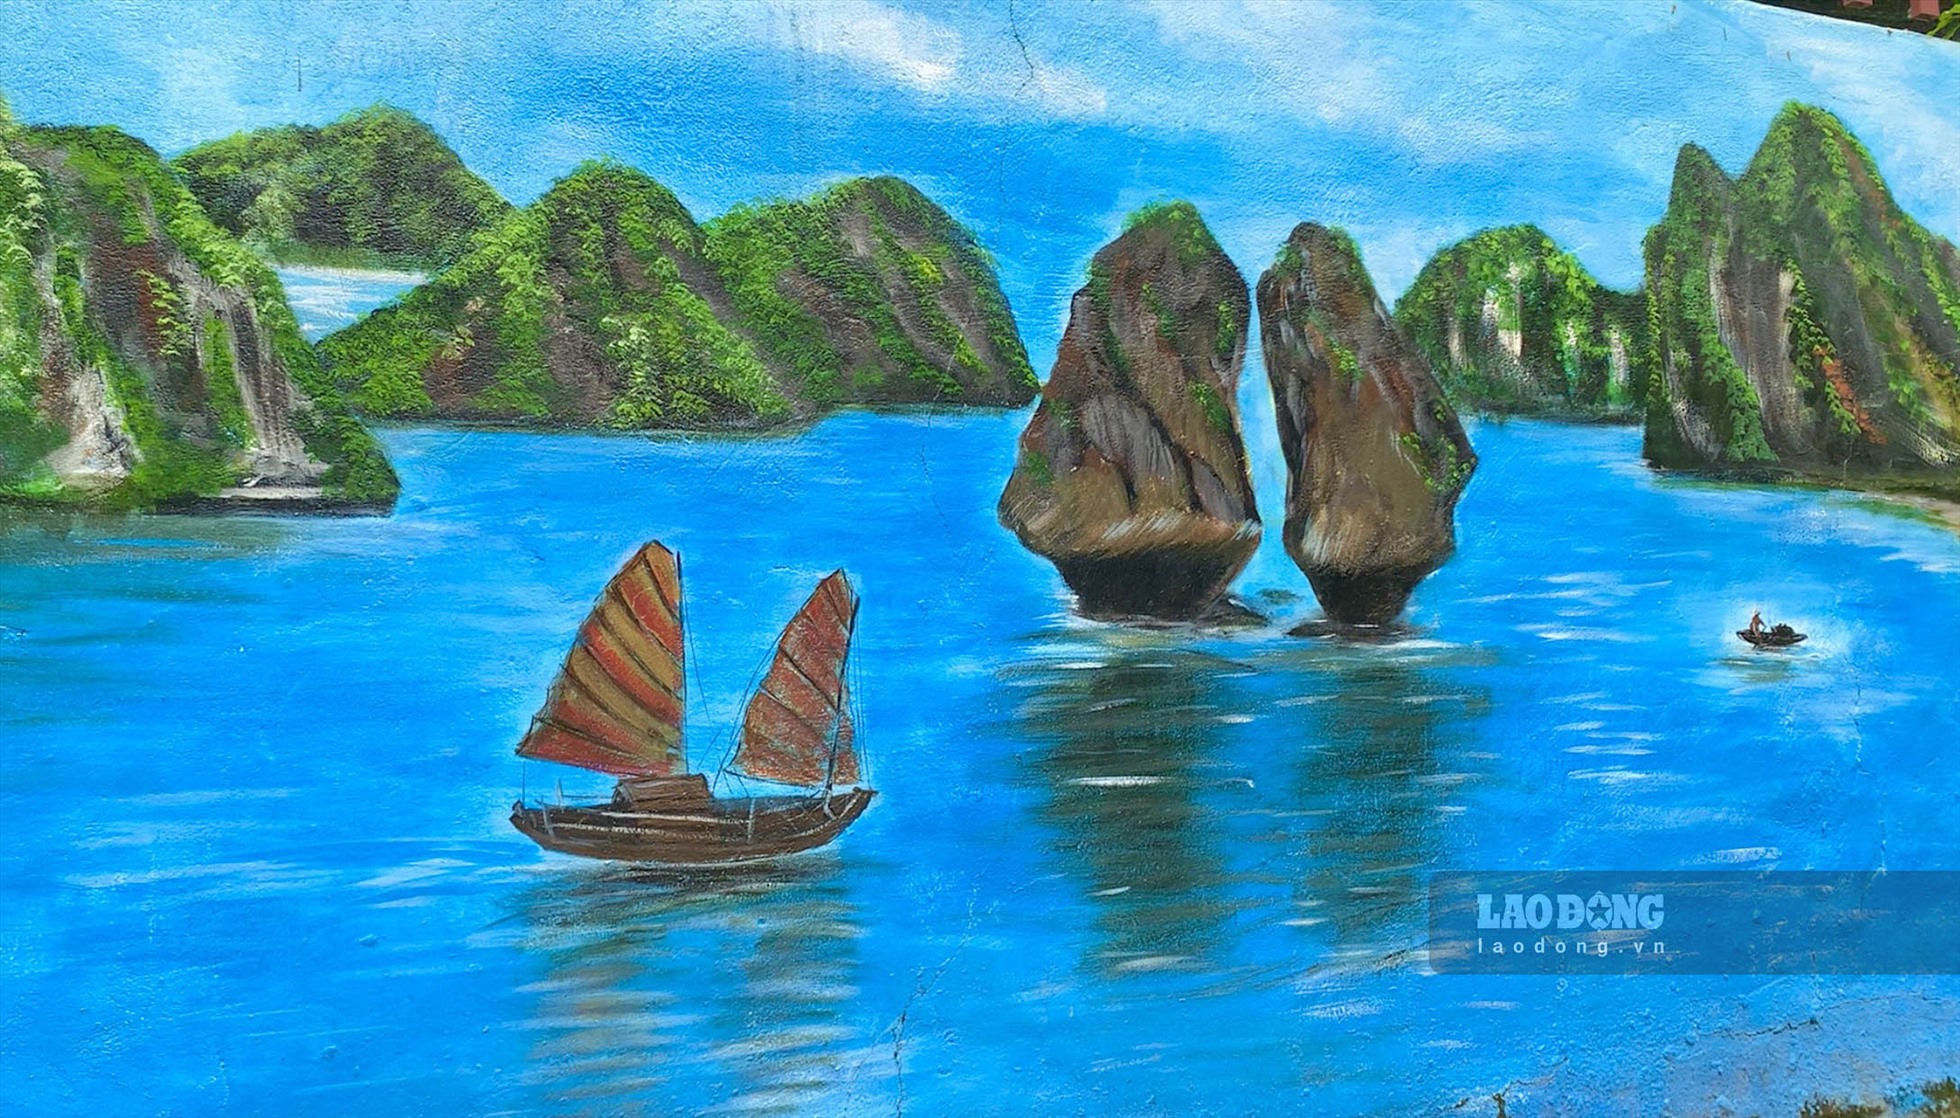 Vịnh Hạ Long là một trong những điểm đến nổi tiếng nhất của Việt Nam, và khi kết hợp với nghệ thuật vẽ tranh, bạn sẽ có được những bức tranh vịnh Hạ Long tuyệt đẹp. Hãy cùng chúng tôi nhìn lại những hình ảnh vịnh Hạ Long và tận hưởng vẻ đẹp của thiên nhiên qua từng nét vẽ.